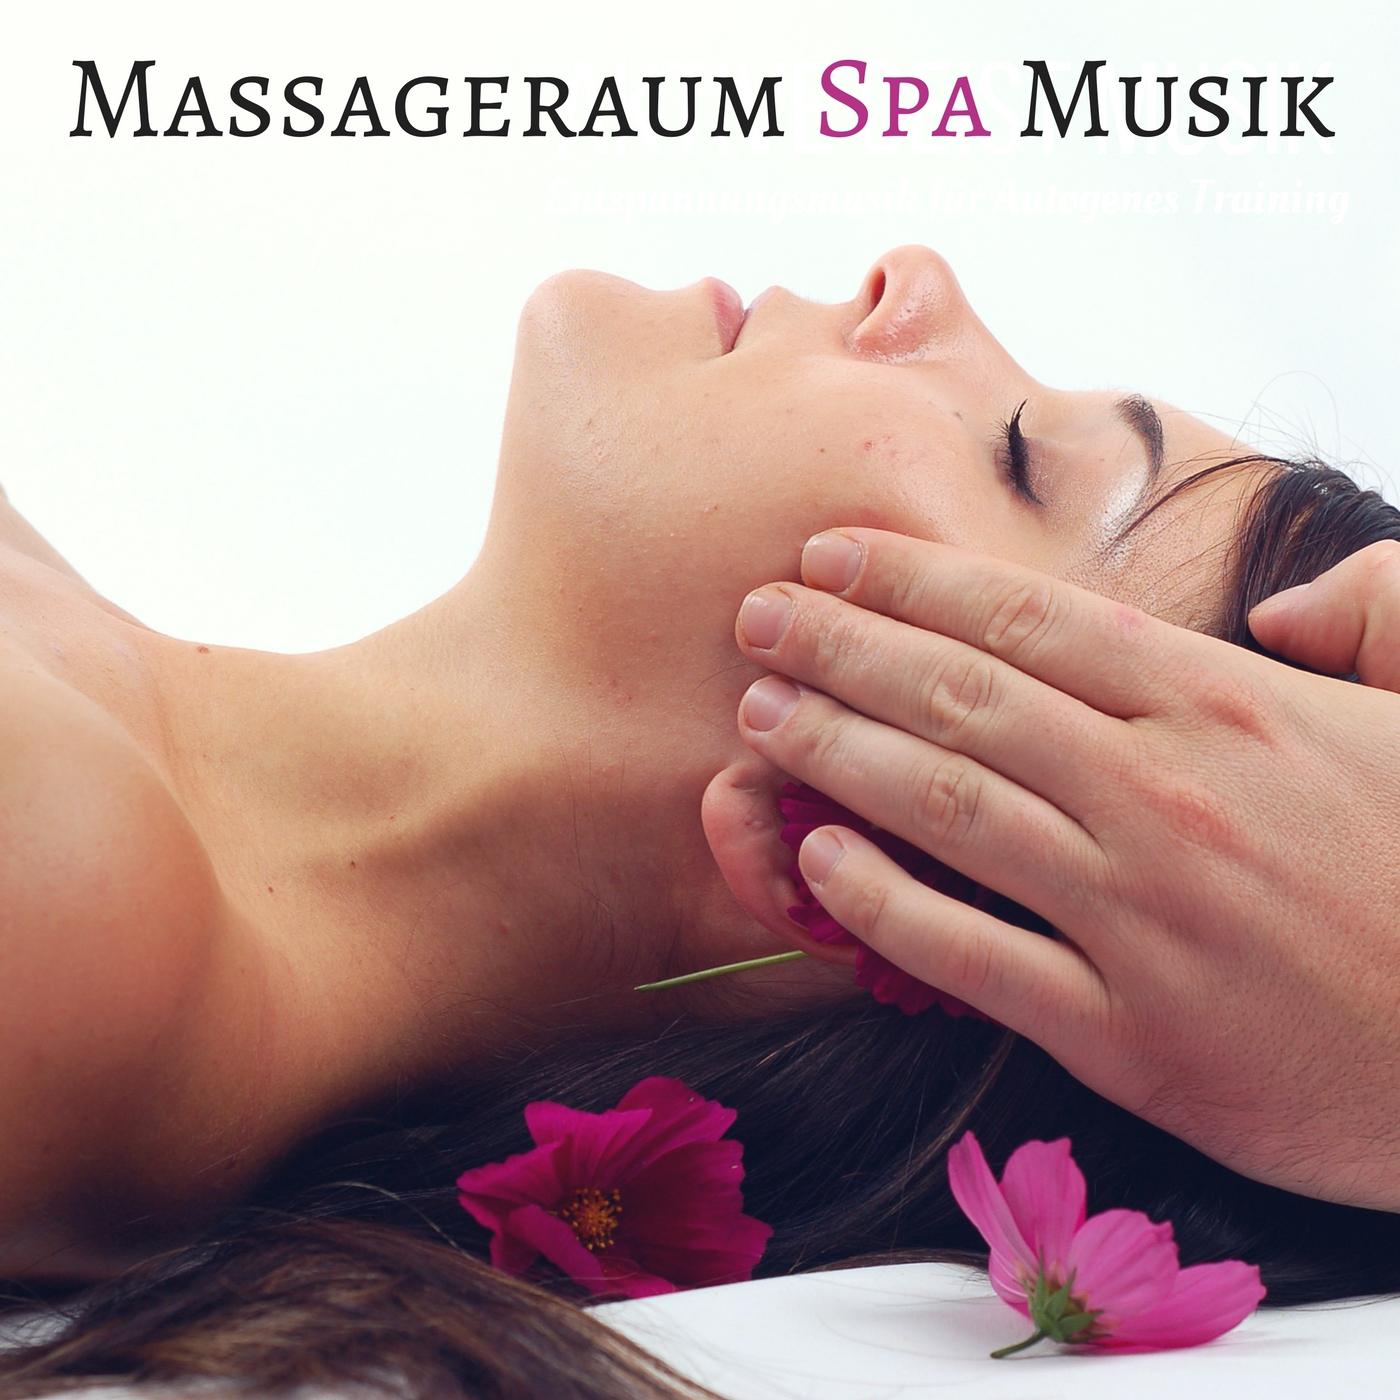 Massageraum Spa Musik - Wellness Massage Musik zum Entspannen